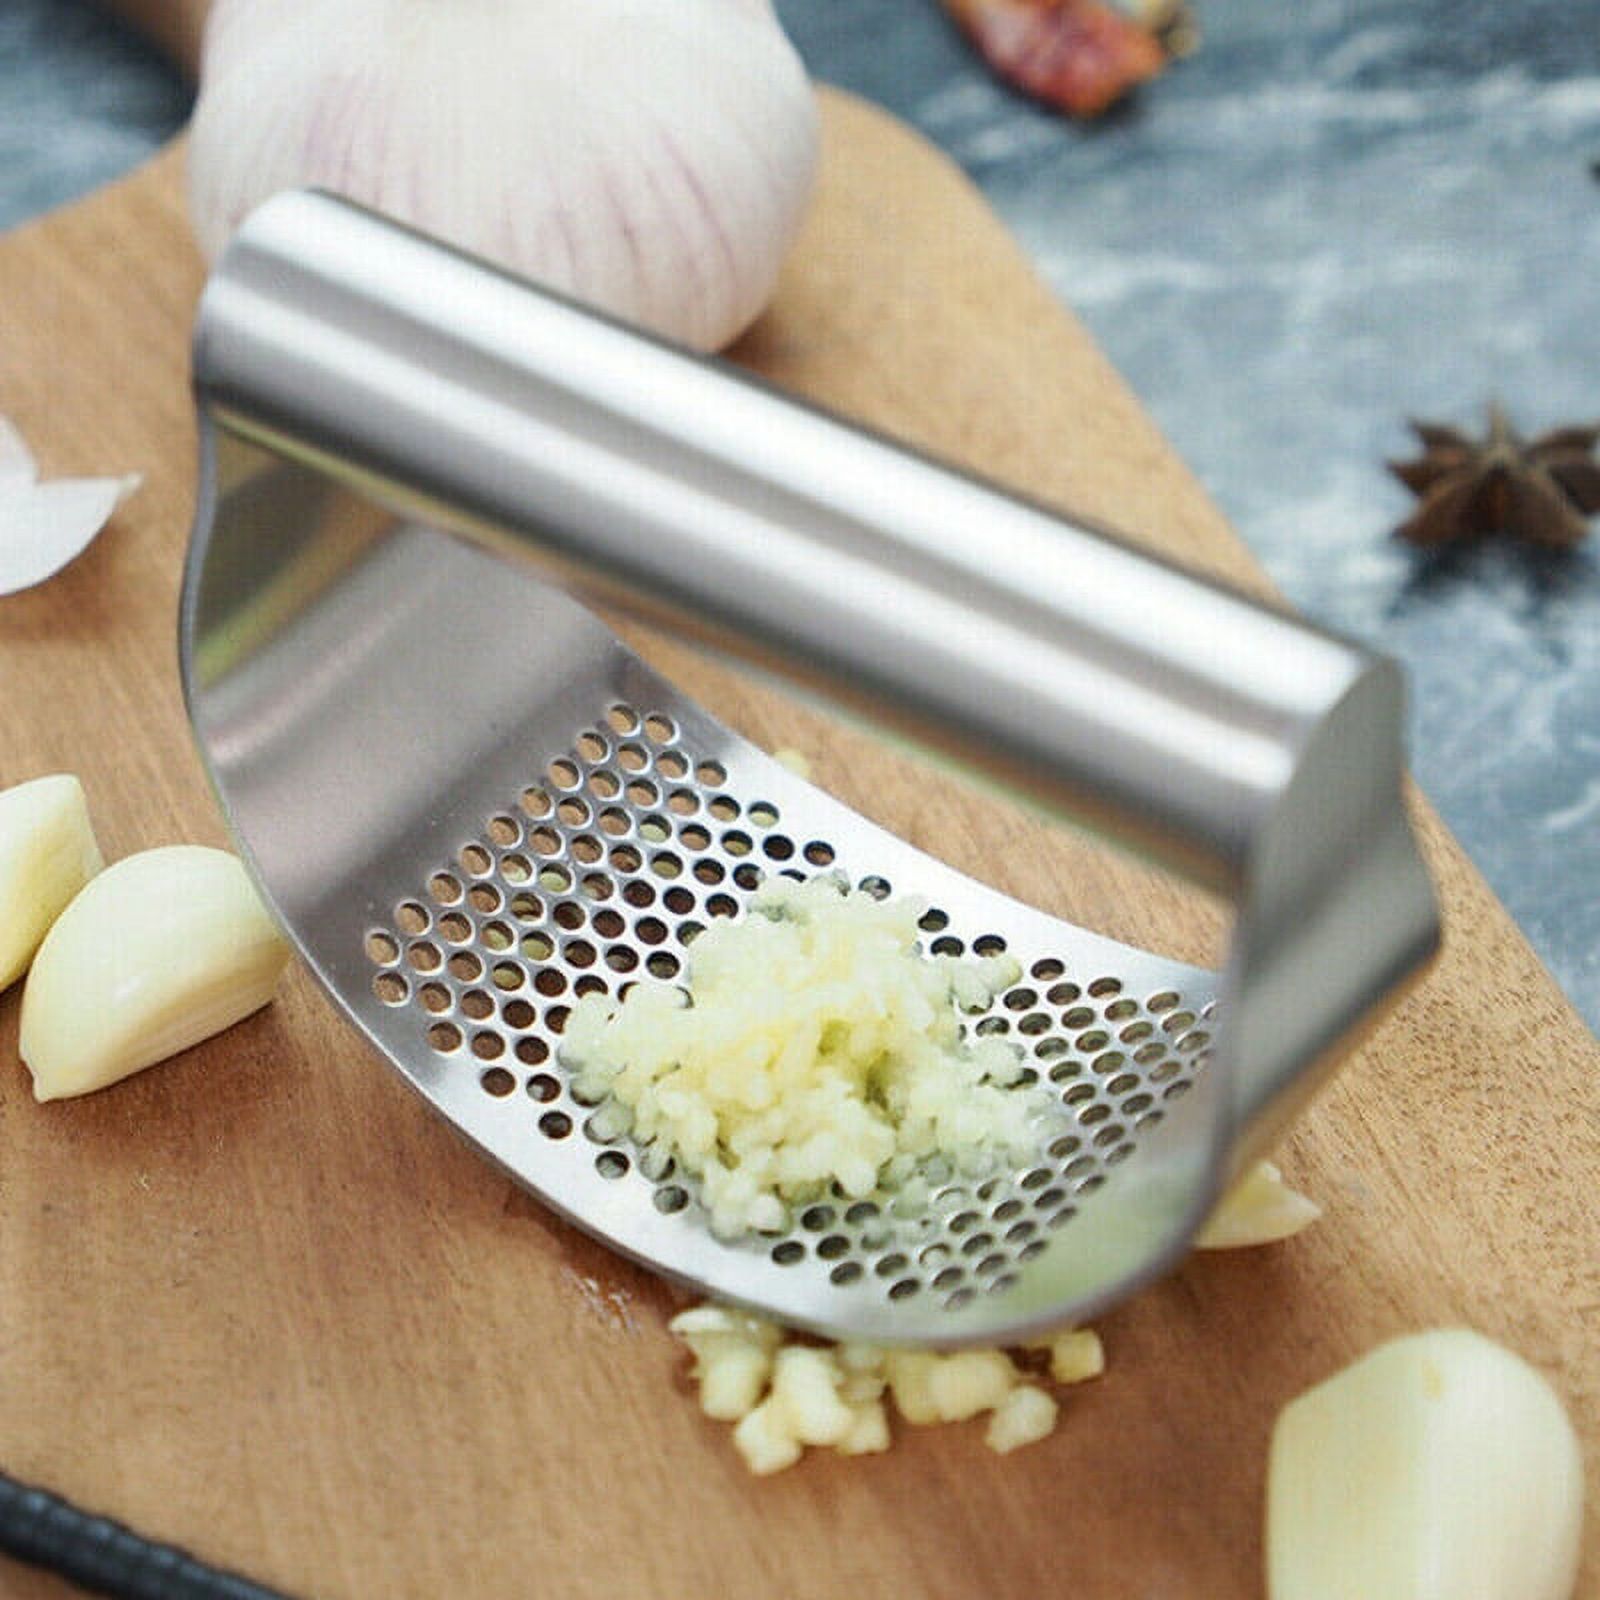  Chef'n Garlic Zoom: Garlic Presses: Home & Kitchen